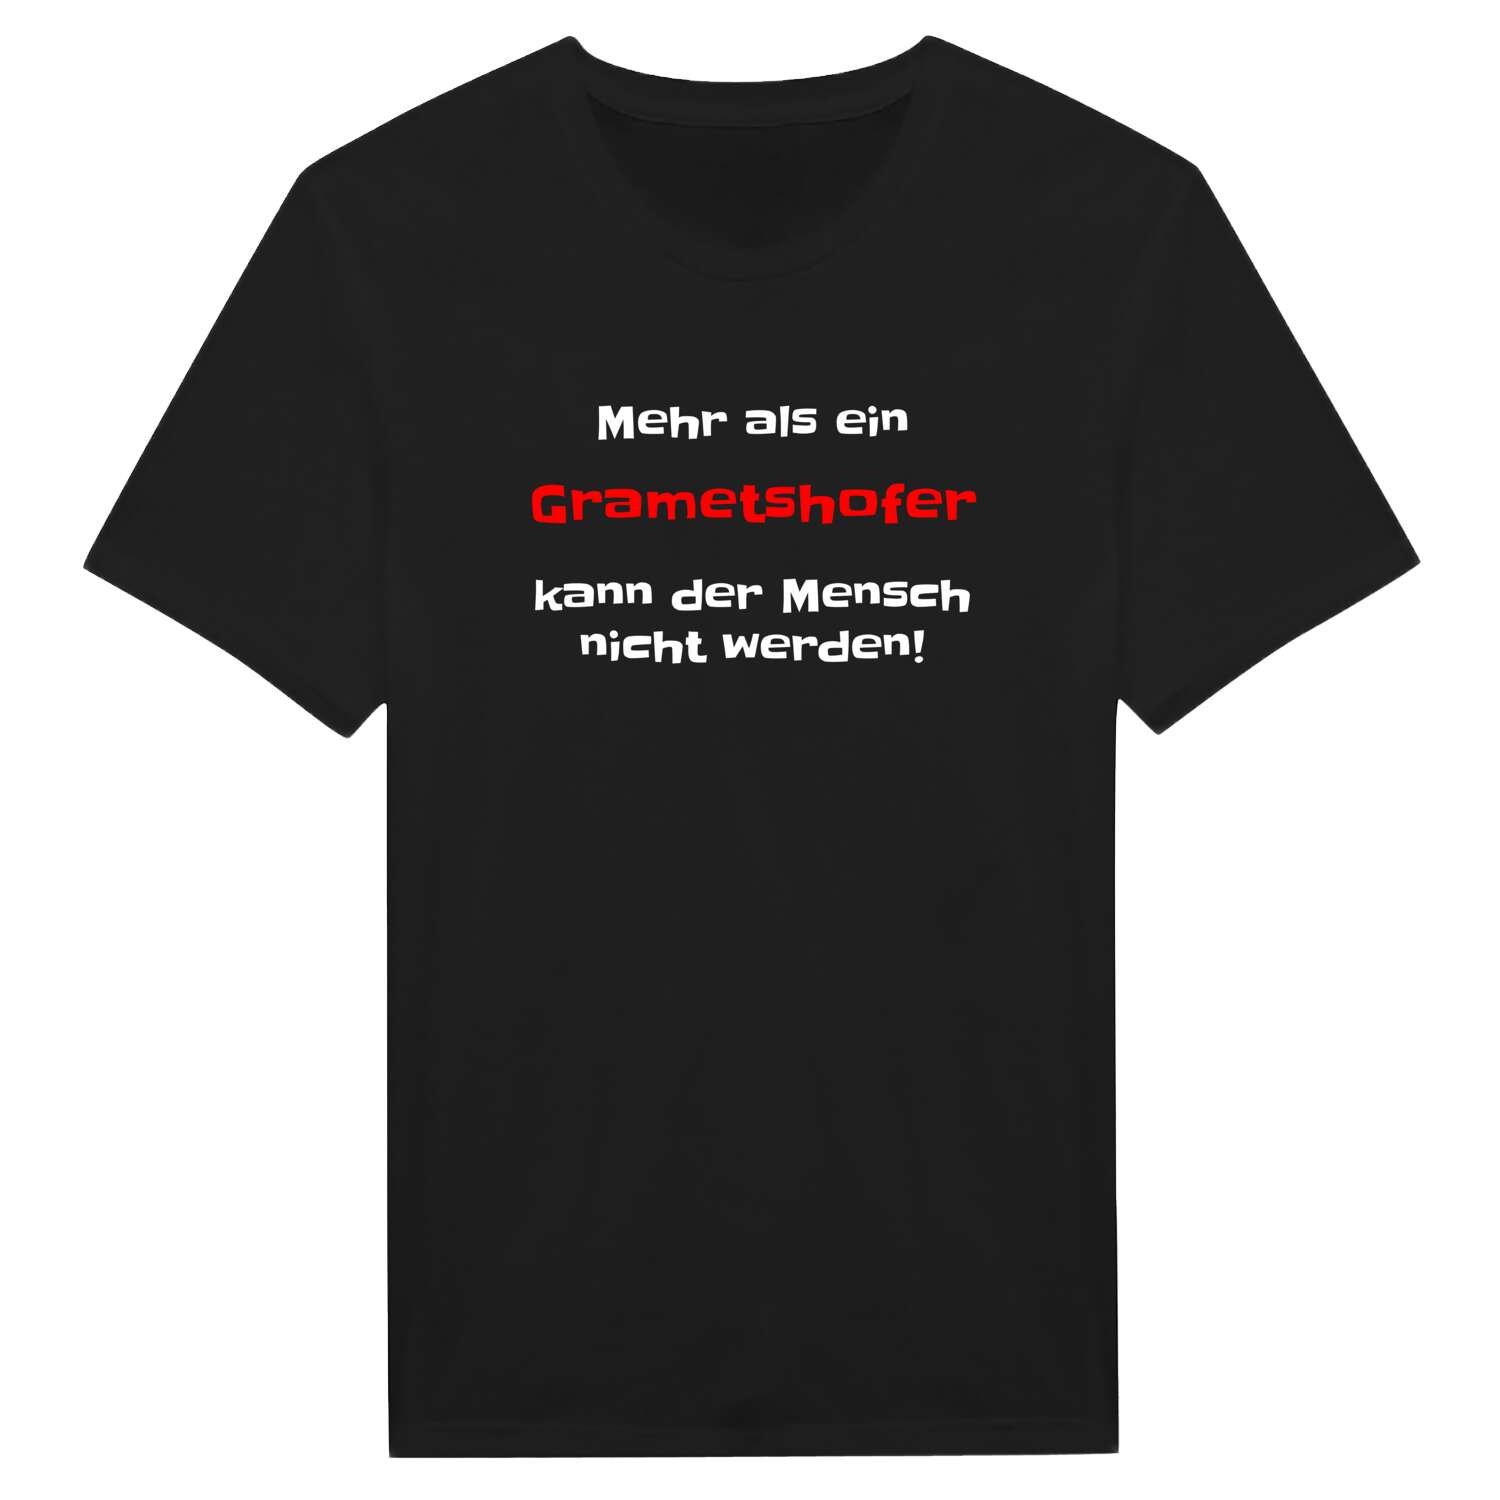 Grametshof T-Shirt »Mehr als ein«